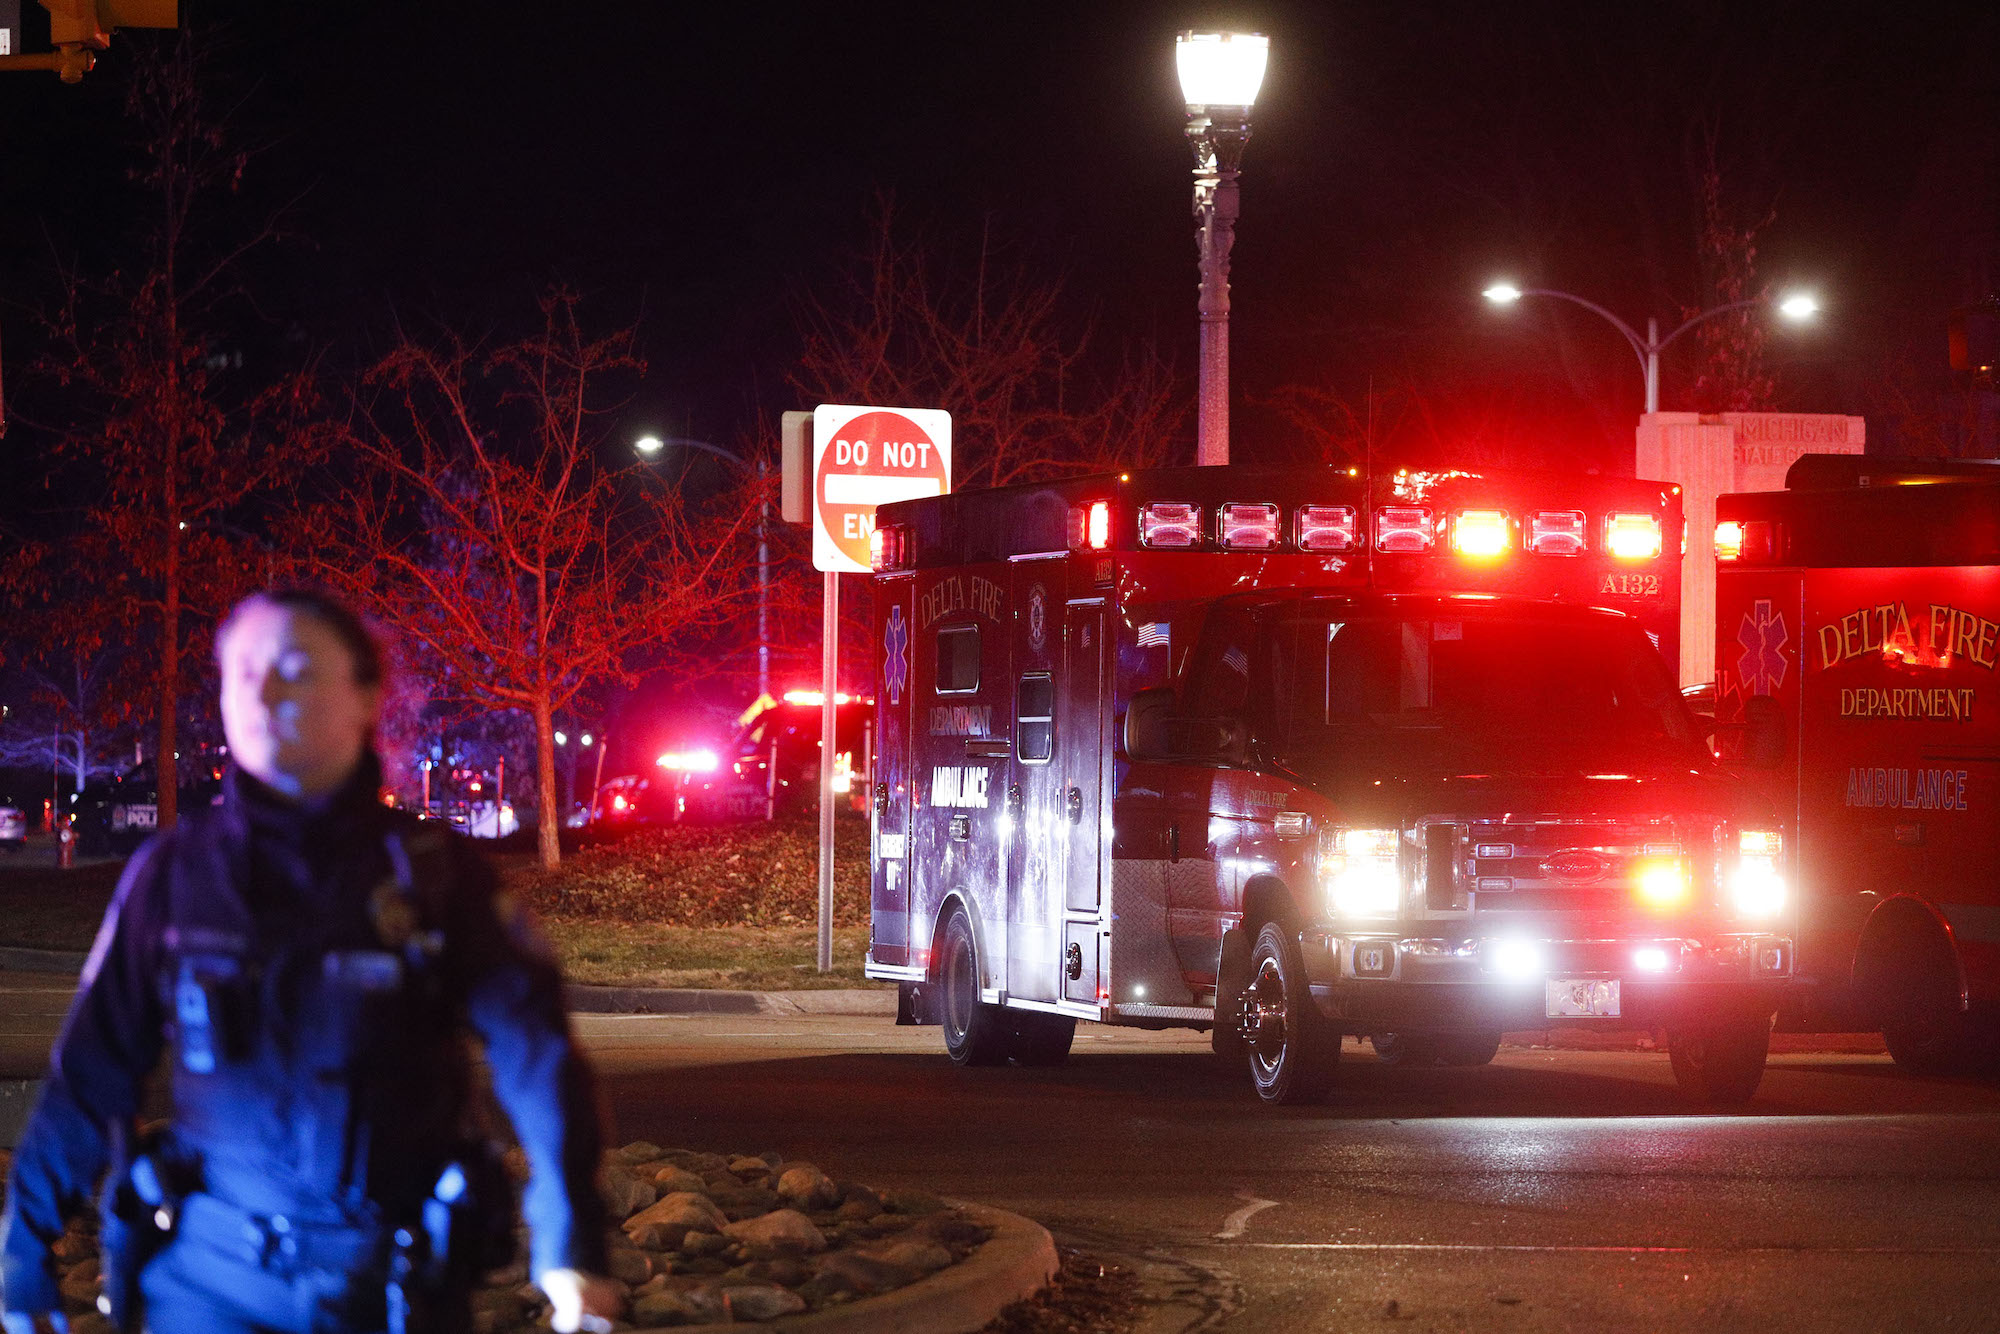 An ambulance is seen at Michigan State University late Monday night.